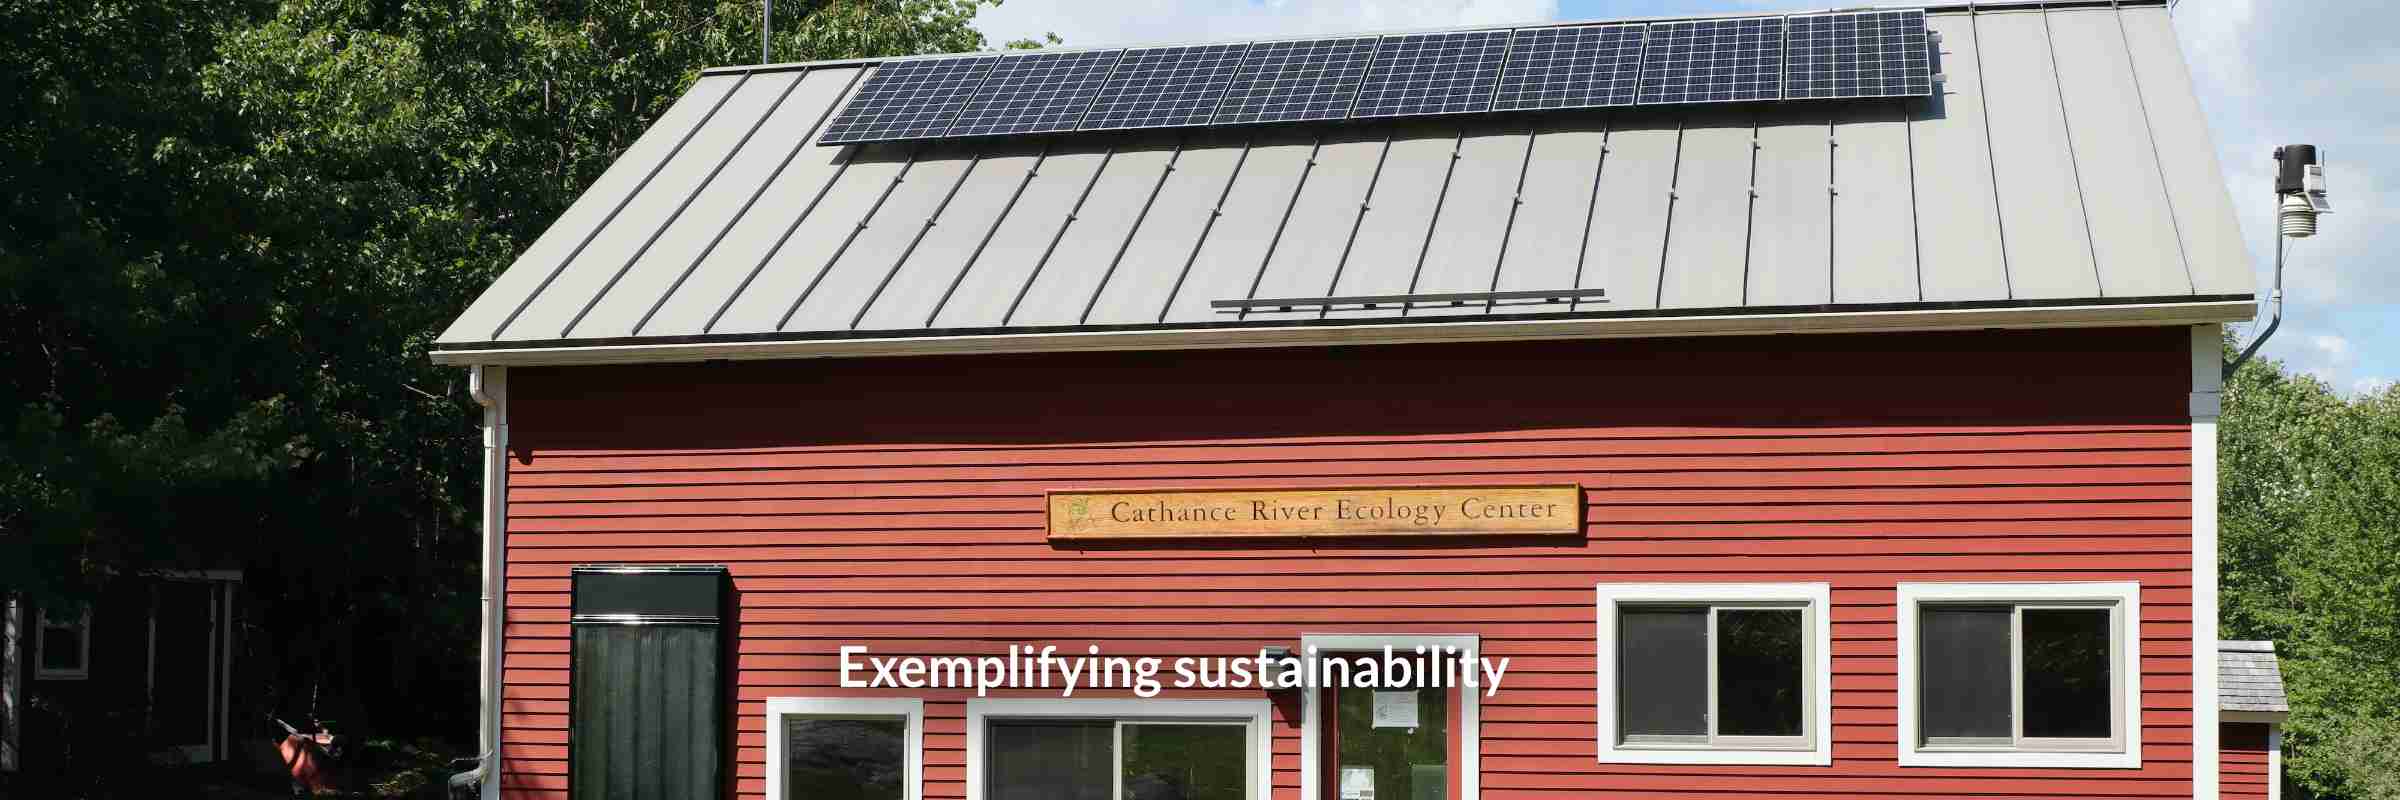 5 Exemplifying sustainability